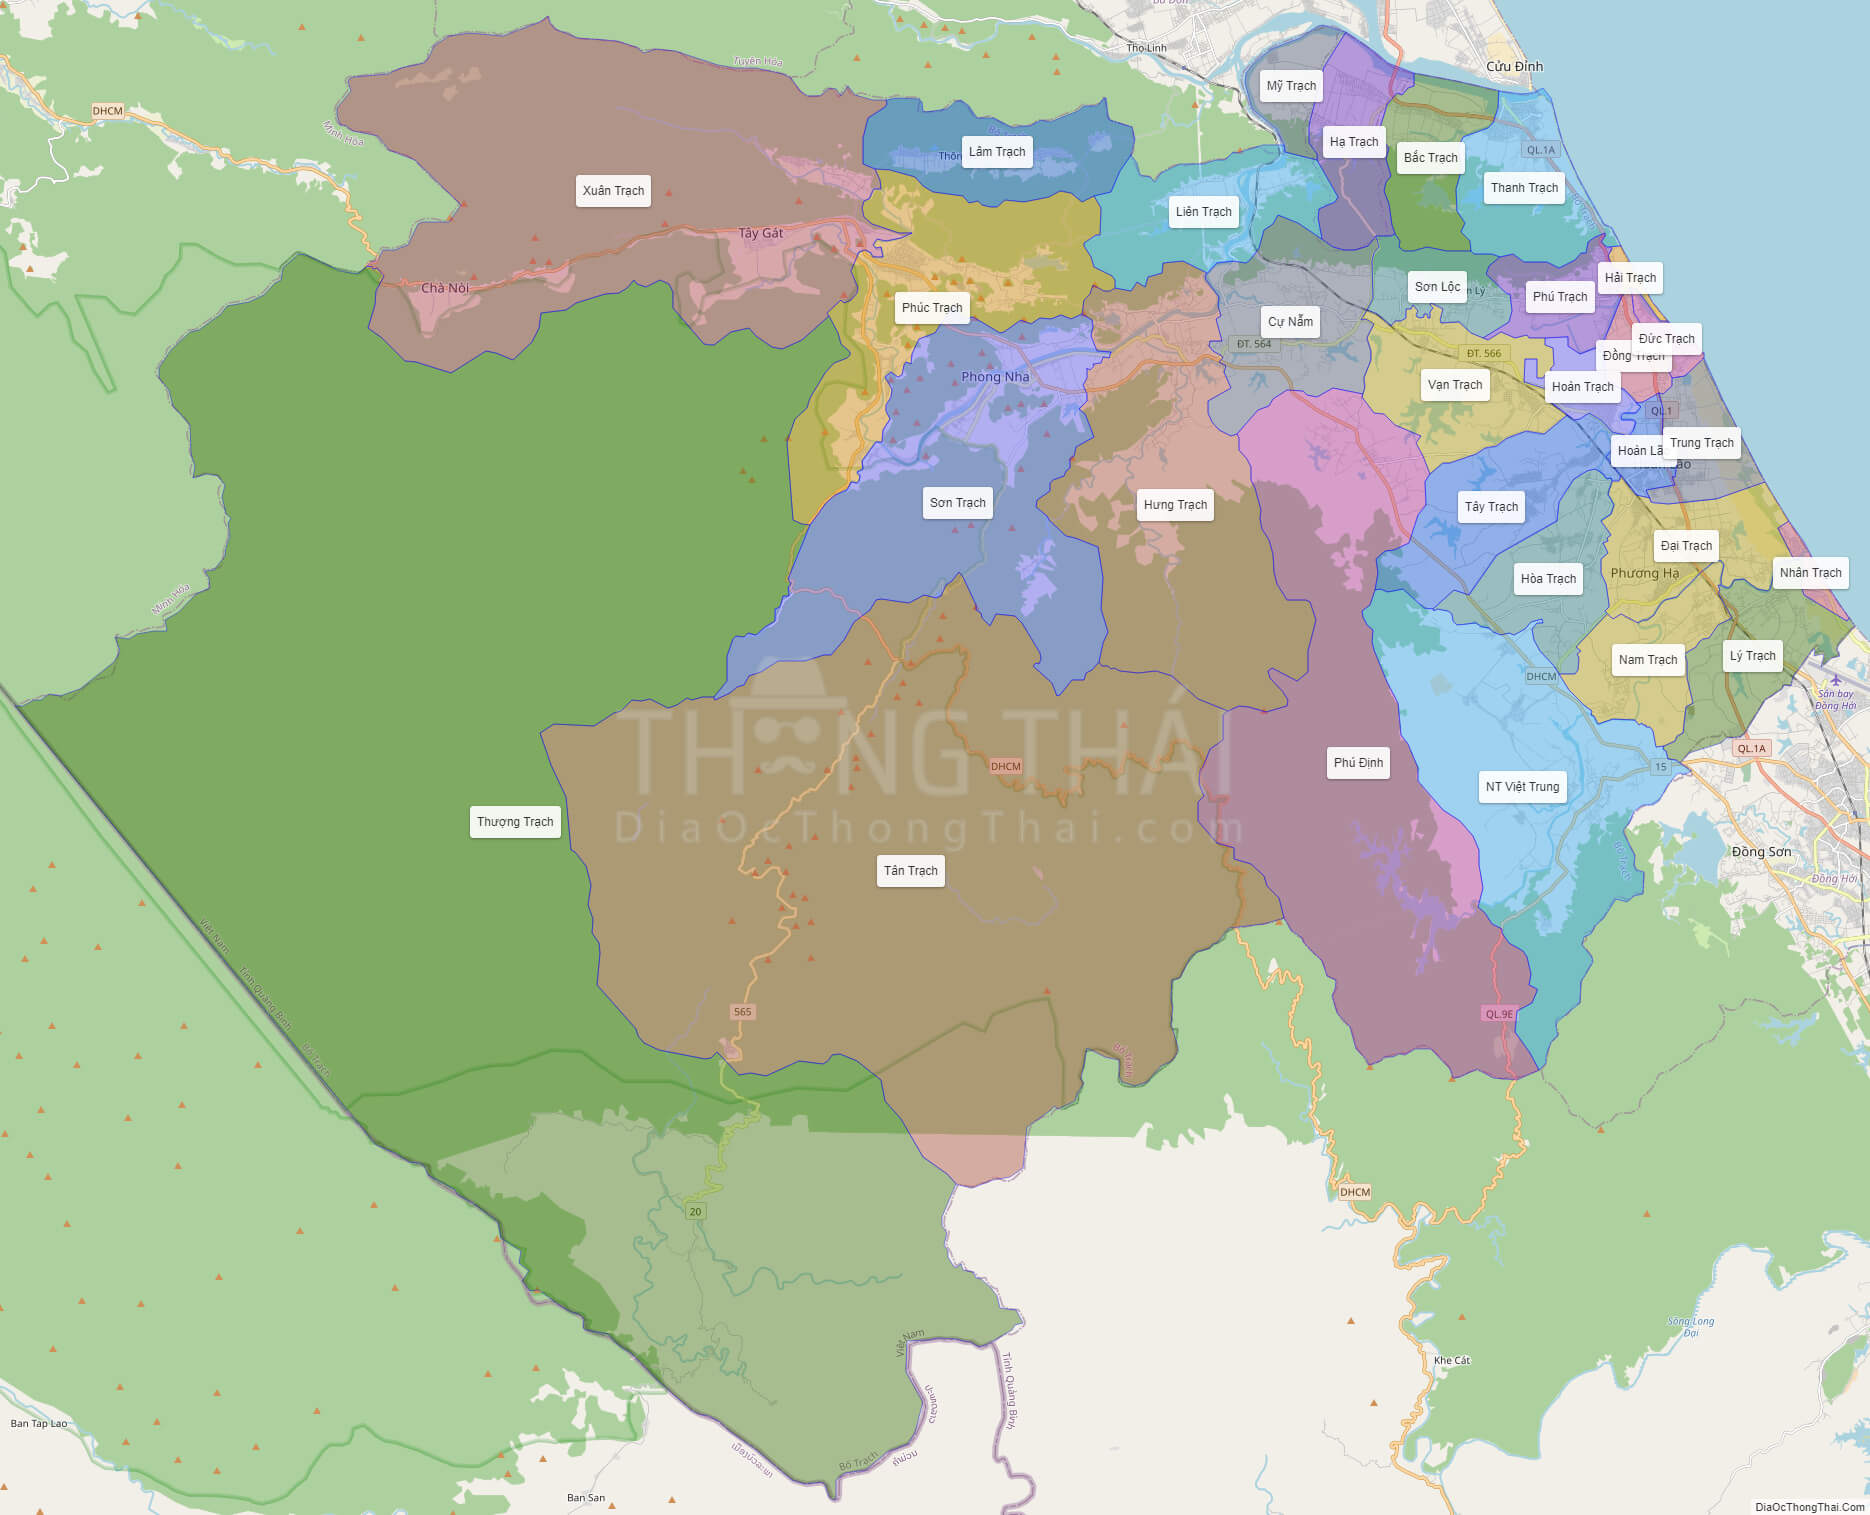 Tham quan và khám phá tỉnh Quảng Bình sẽ trở nên dễ dàng hơn với bản đồ hành chính Khổ Lớn cập nhật năm